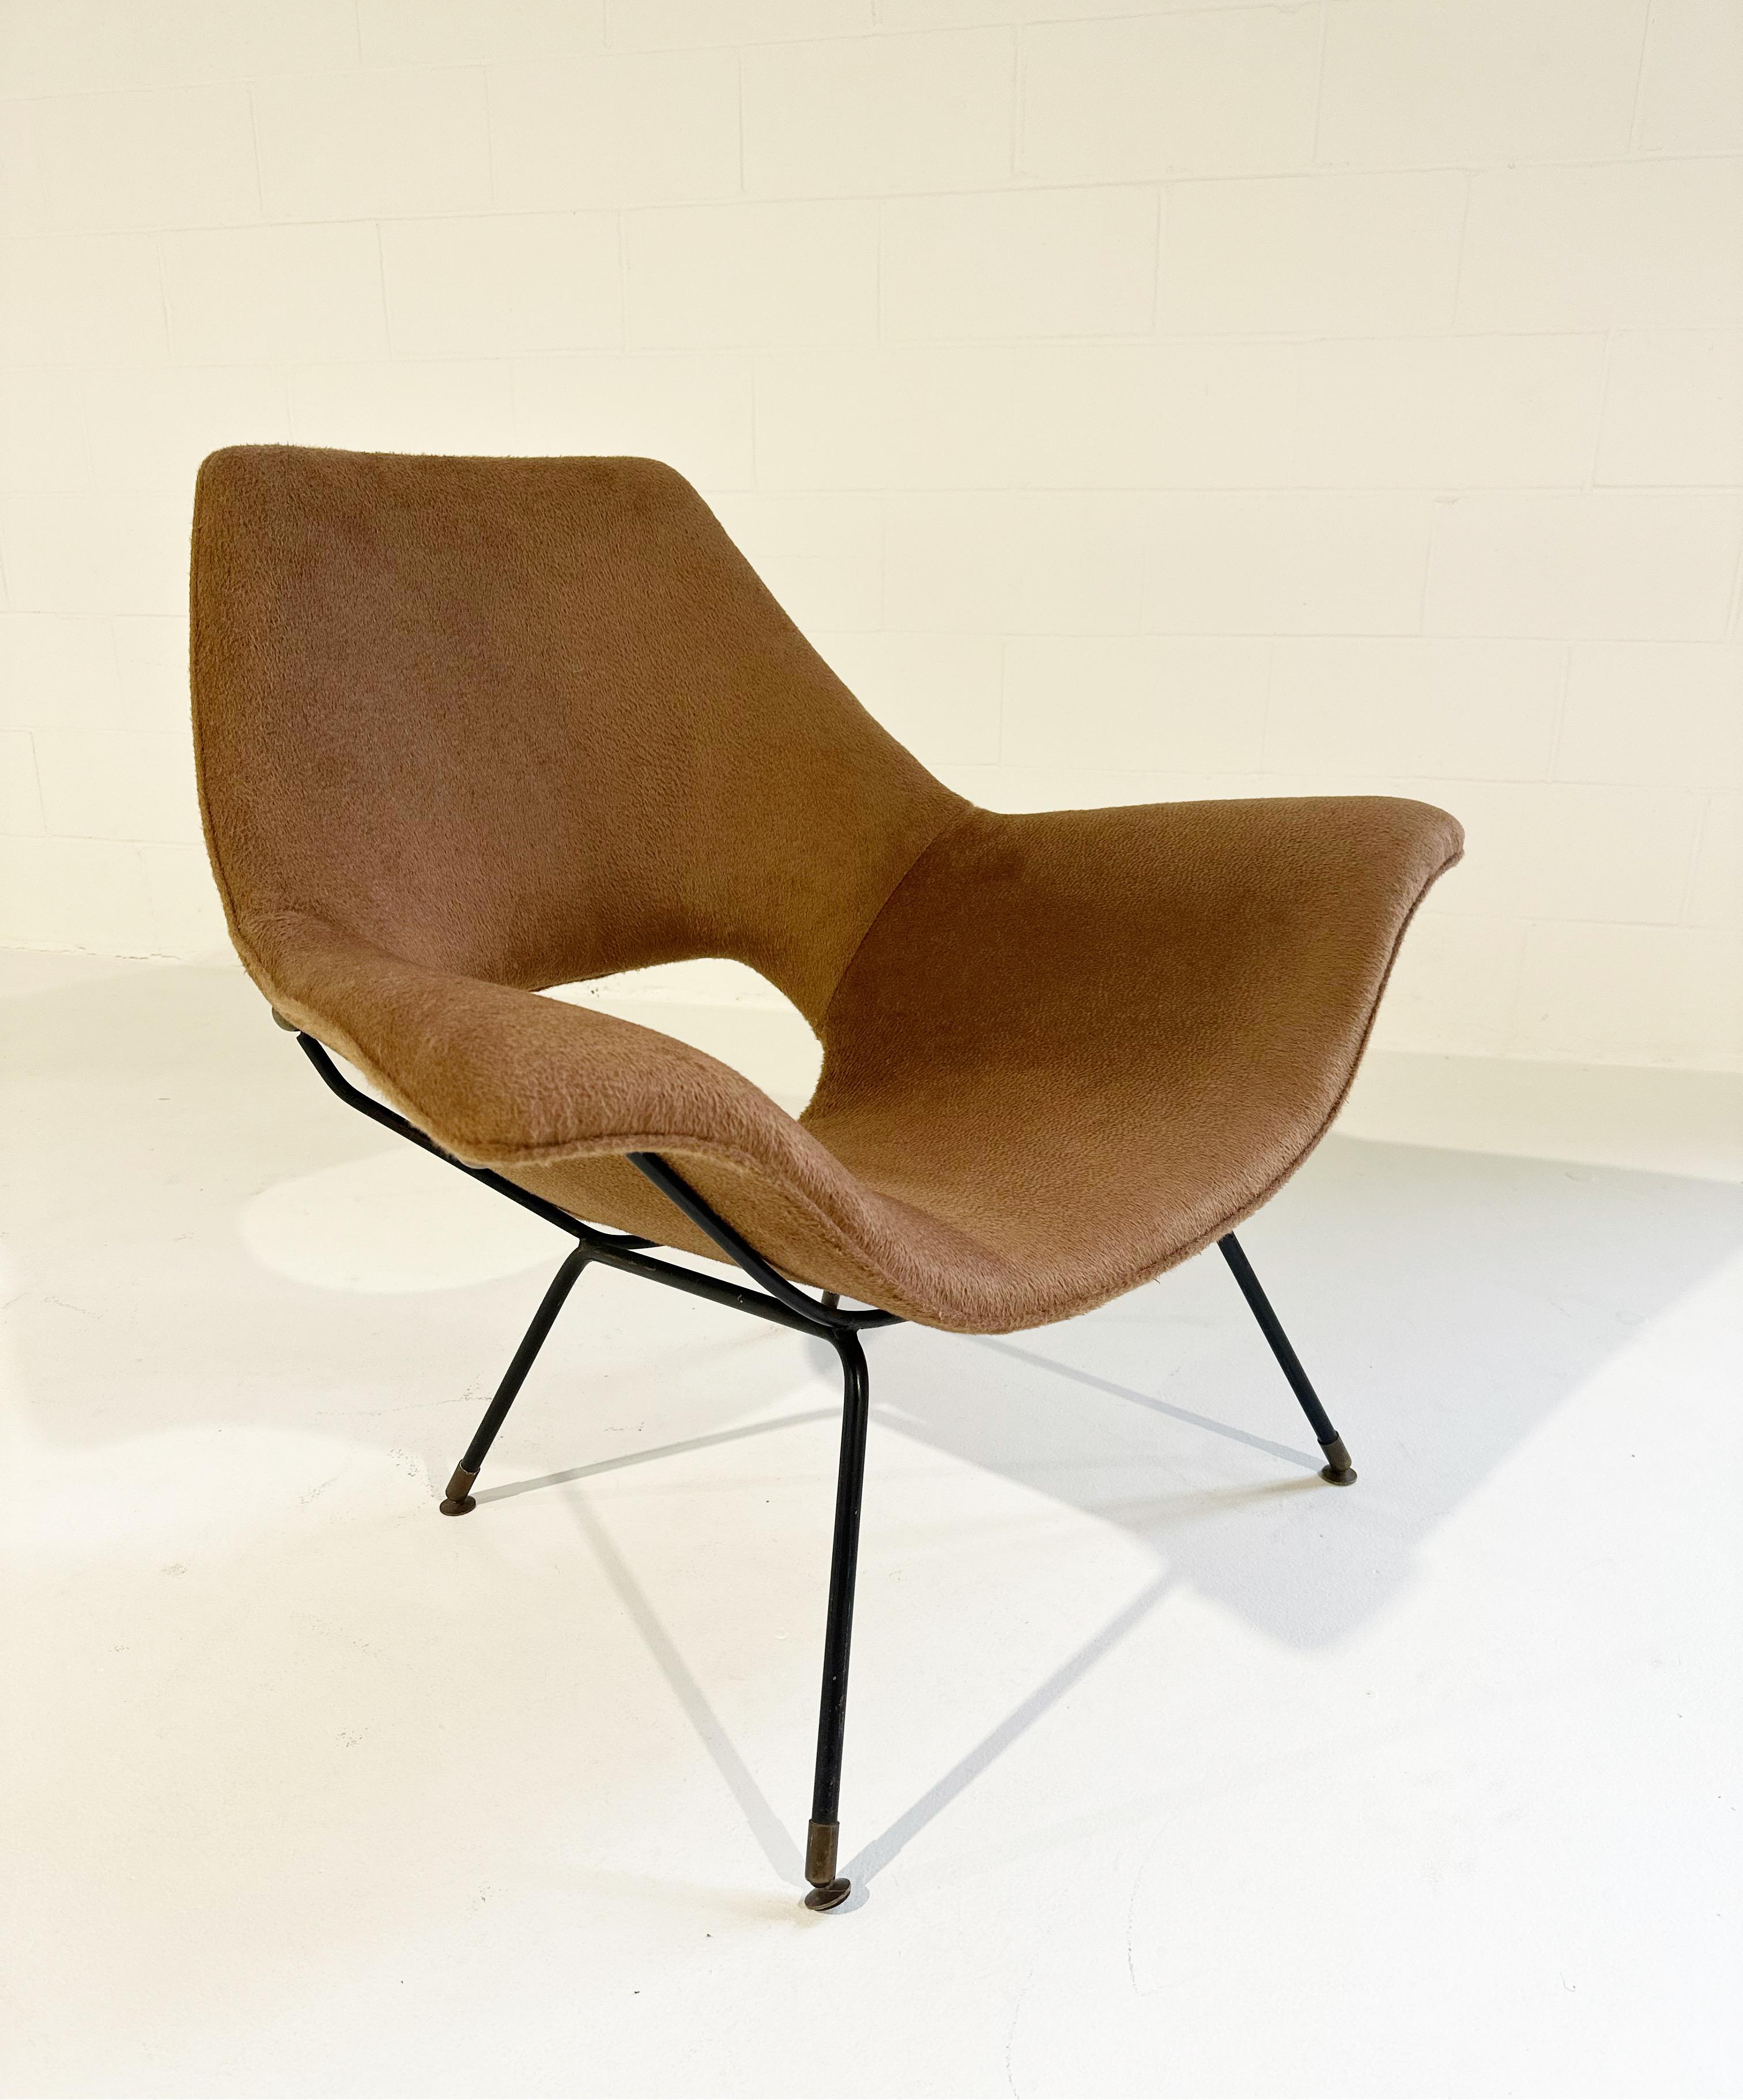 Augusto Bozzi était un designer de meubles italien qui travaillait en étroite collaboration avec le fabricant Saporiti. Ces incroyables chaises longues ont une forme ailée très cool. Elles ont été magistralement revêtues d'un tissu doux et luxueux